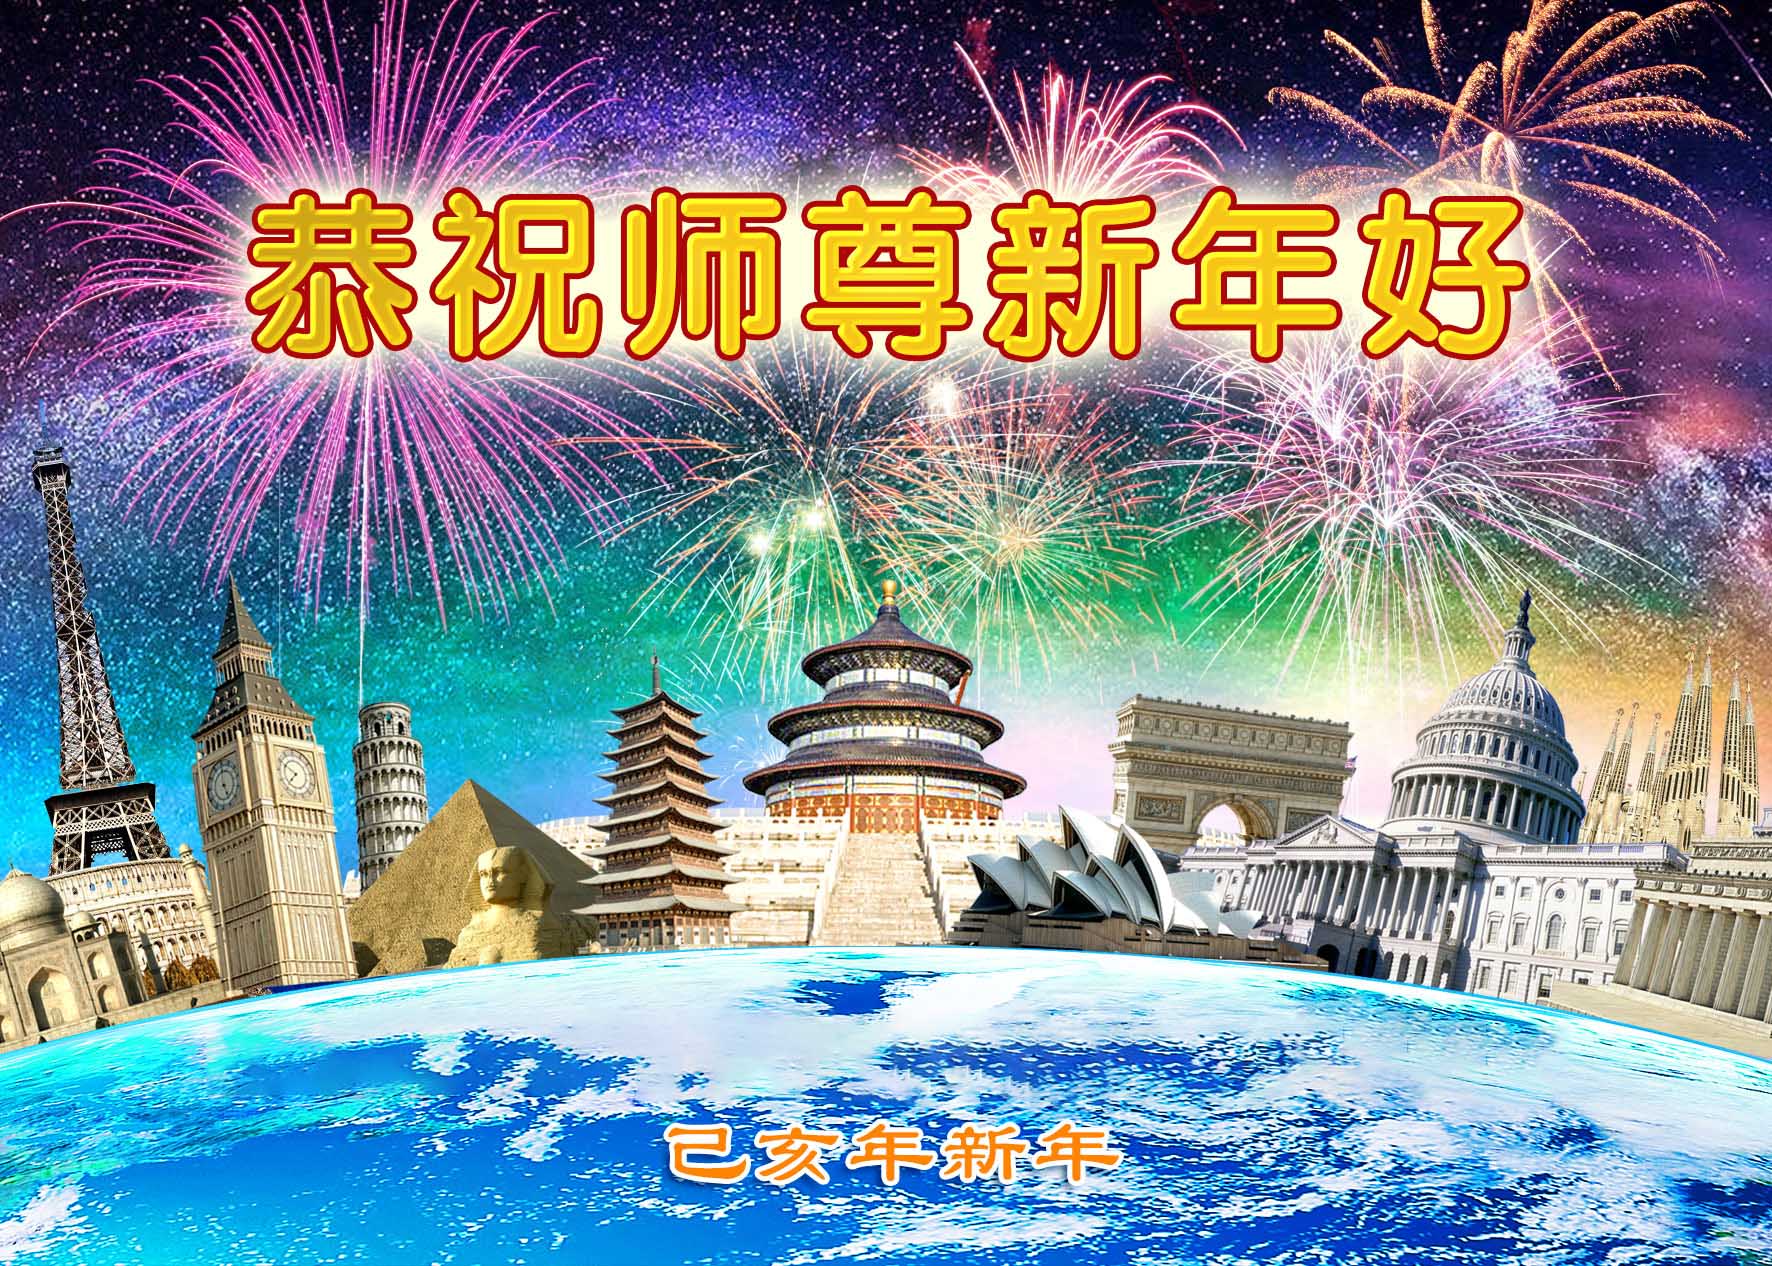 Image for article Des pratiquants de Falun Gong de 50 régions à l'étranger souhaitent à Maître Li Hongzhi un bon Nouvel An chinois